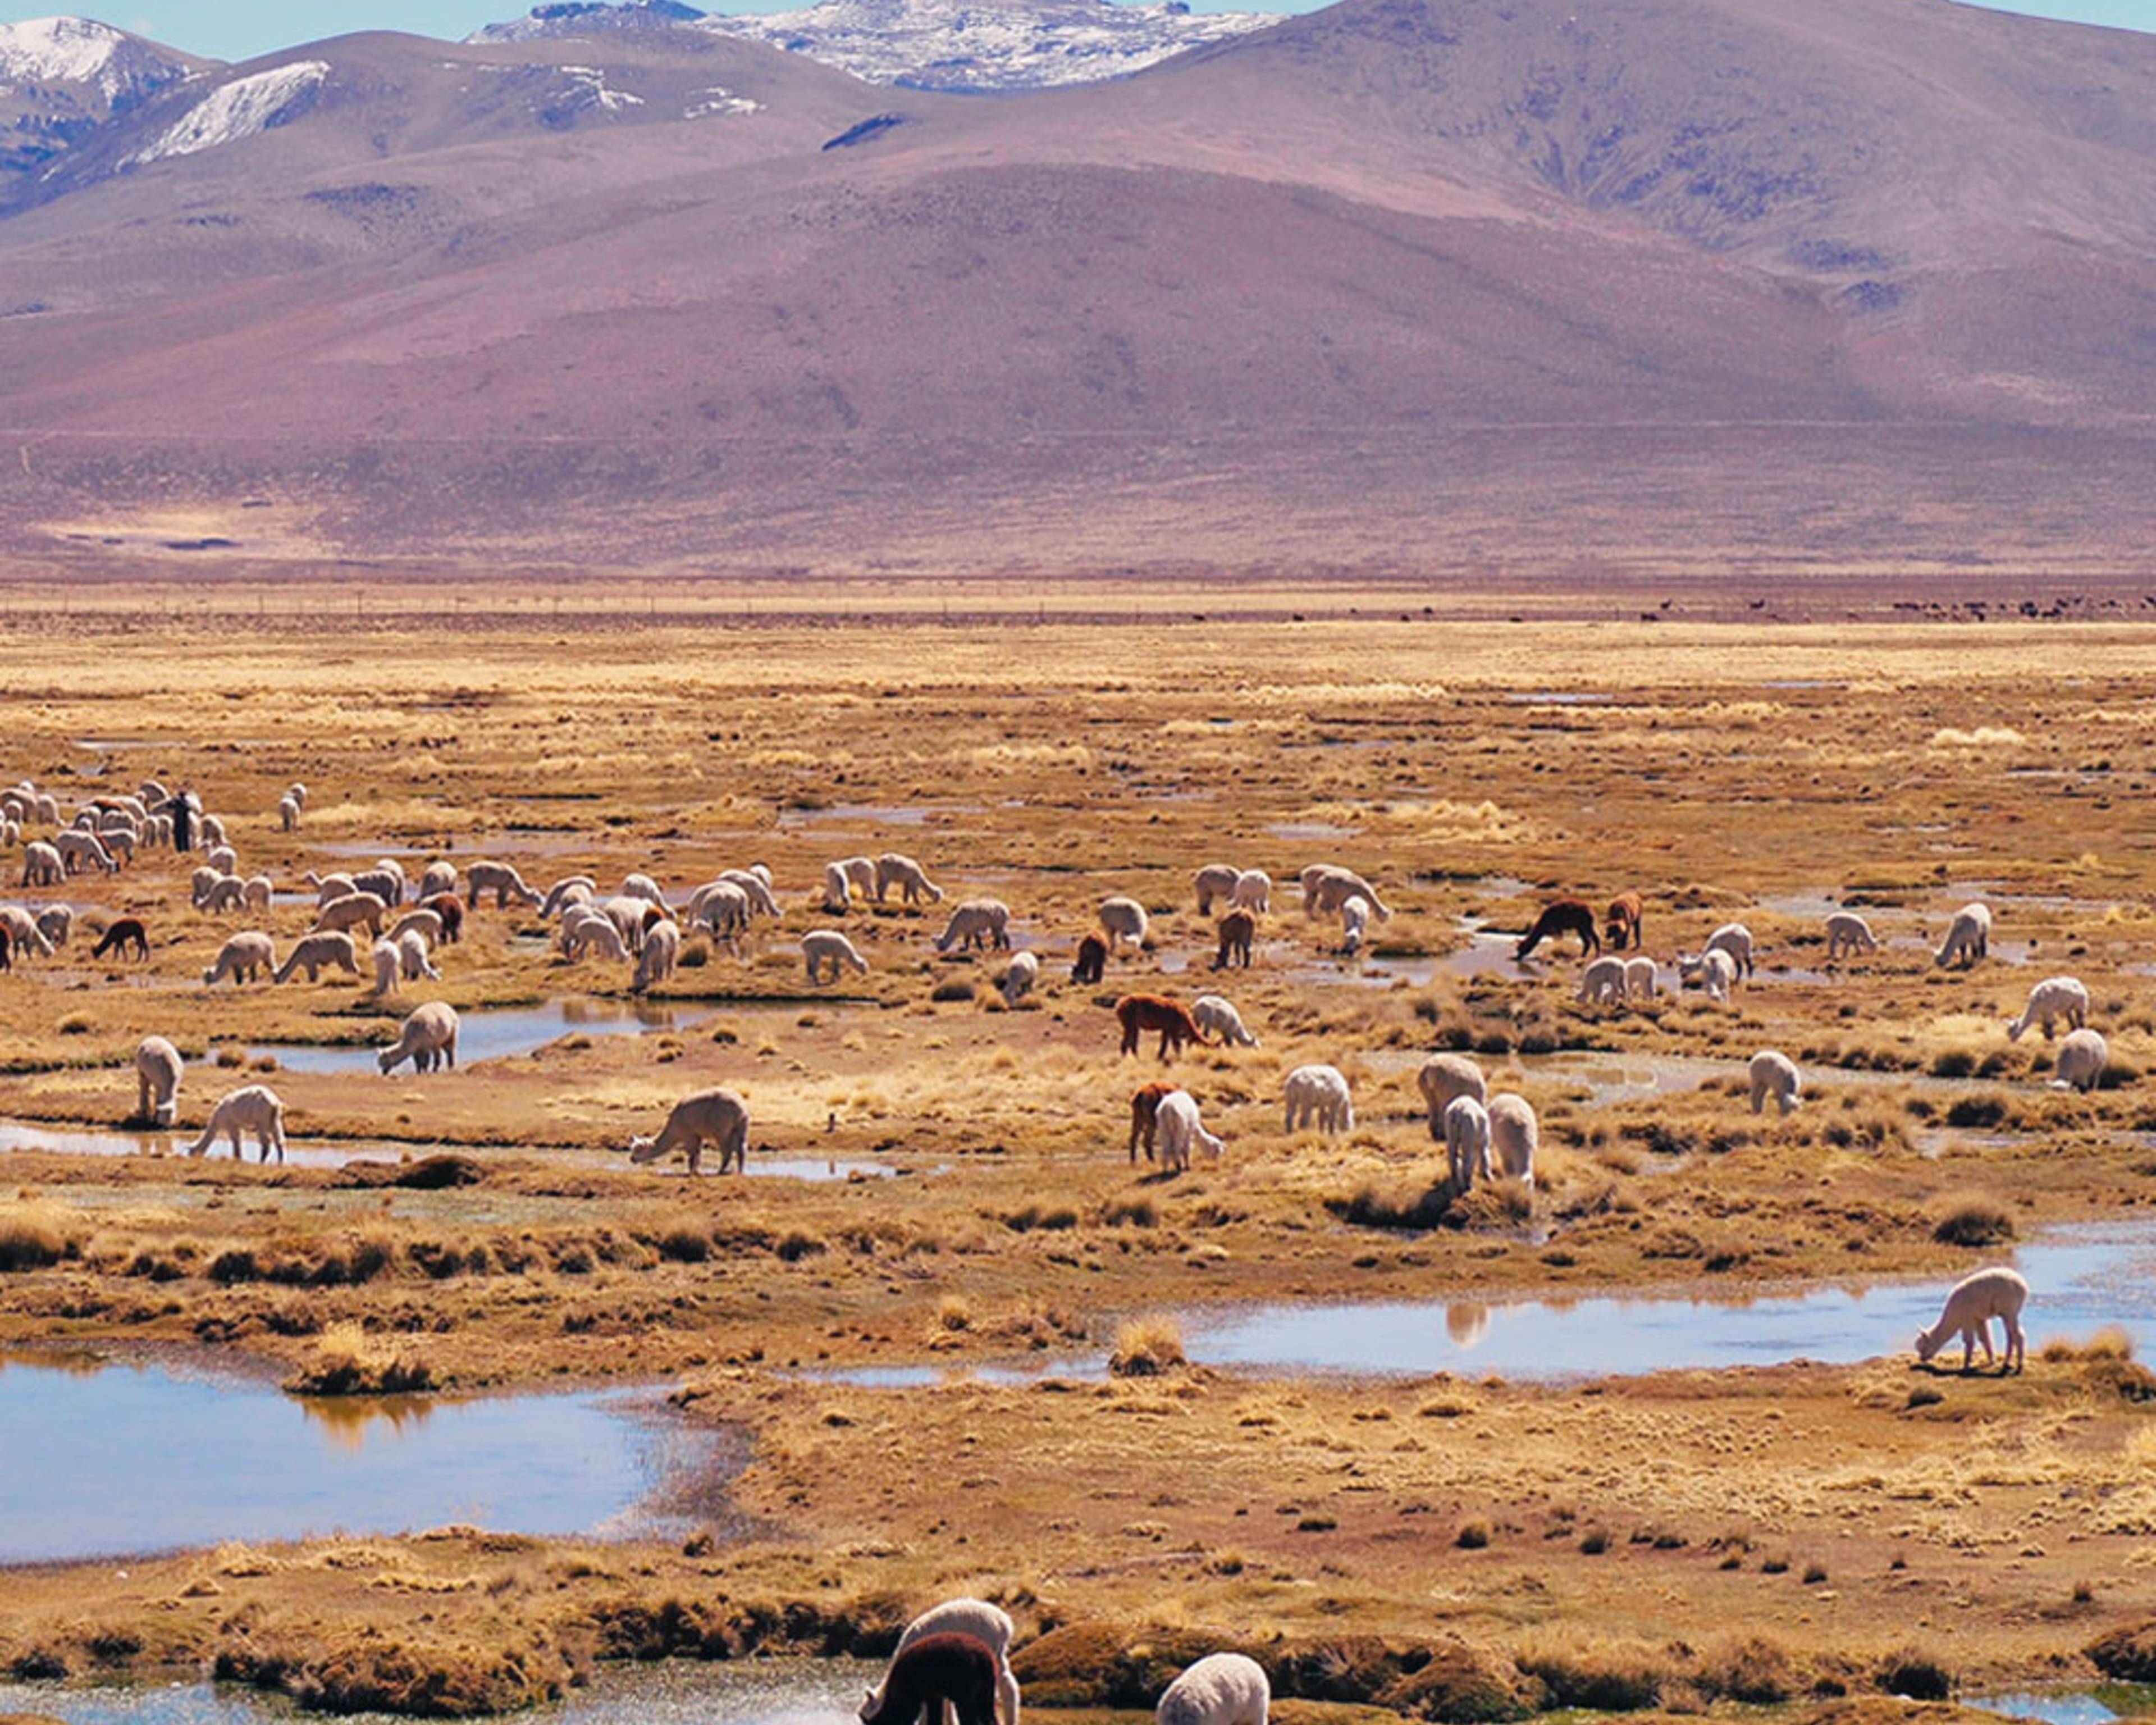 Viajes de naturaleza a Perú - Viajes a medida para disfrutar al aire libre